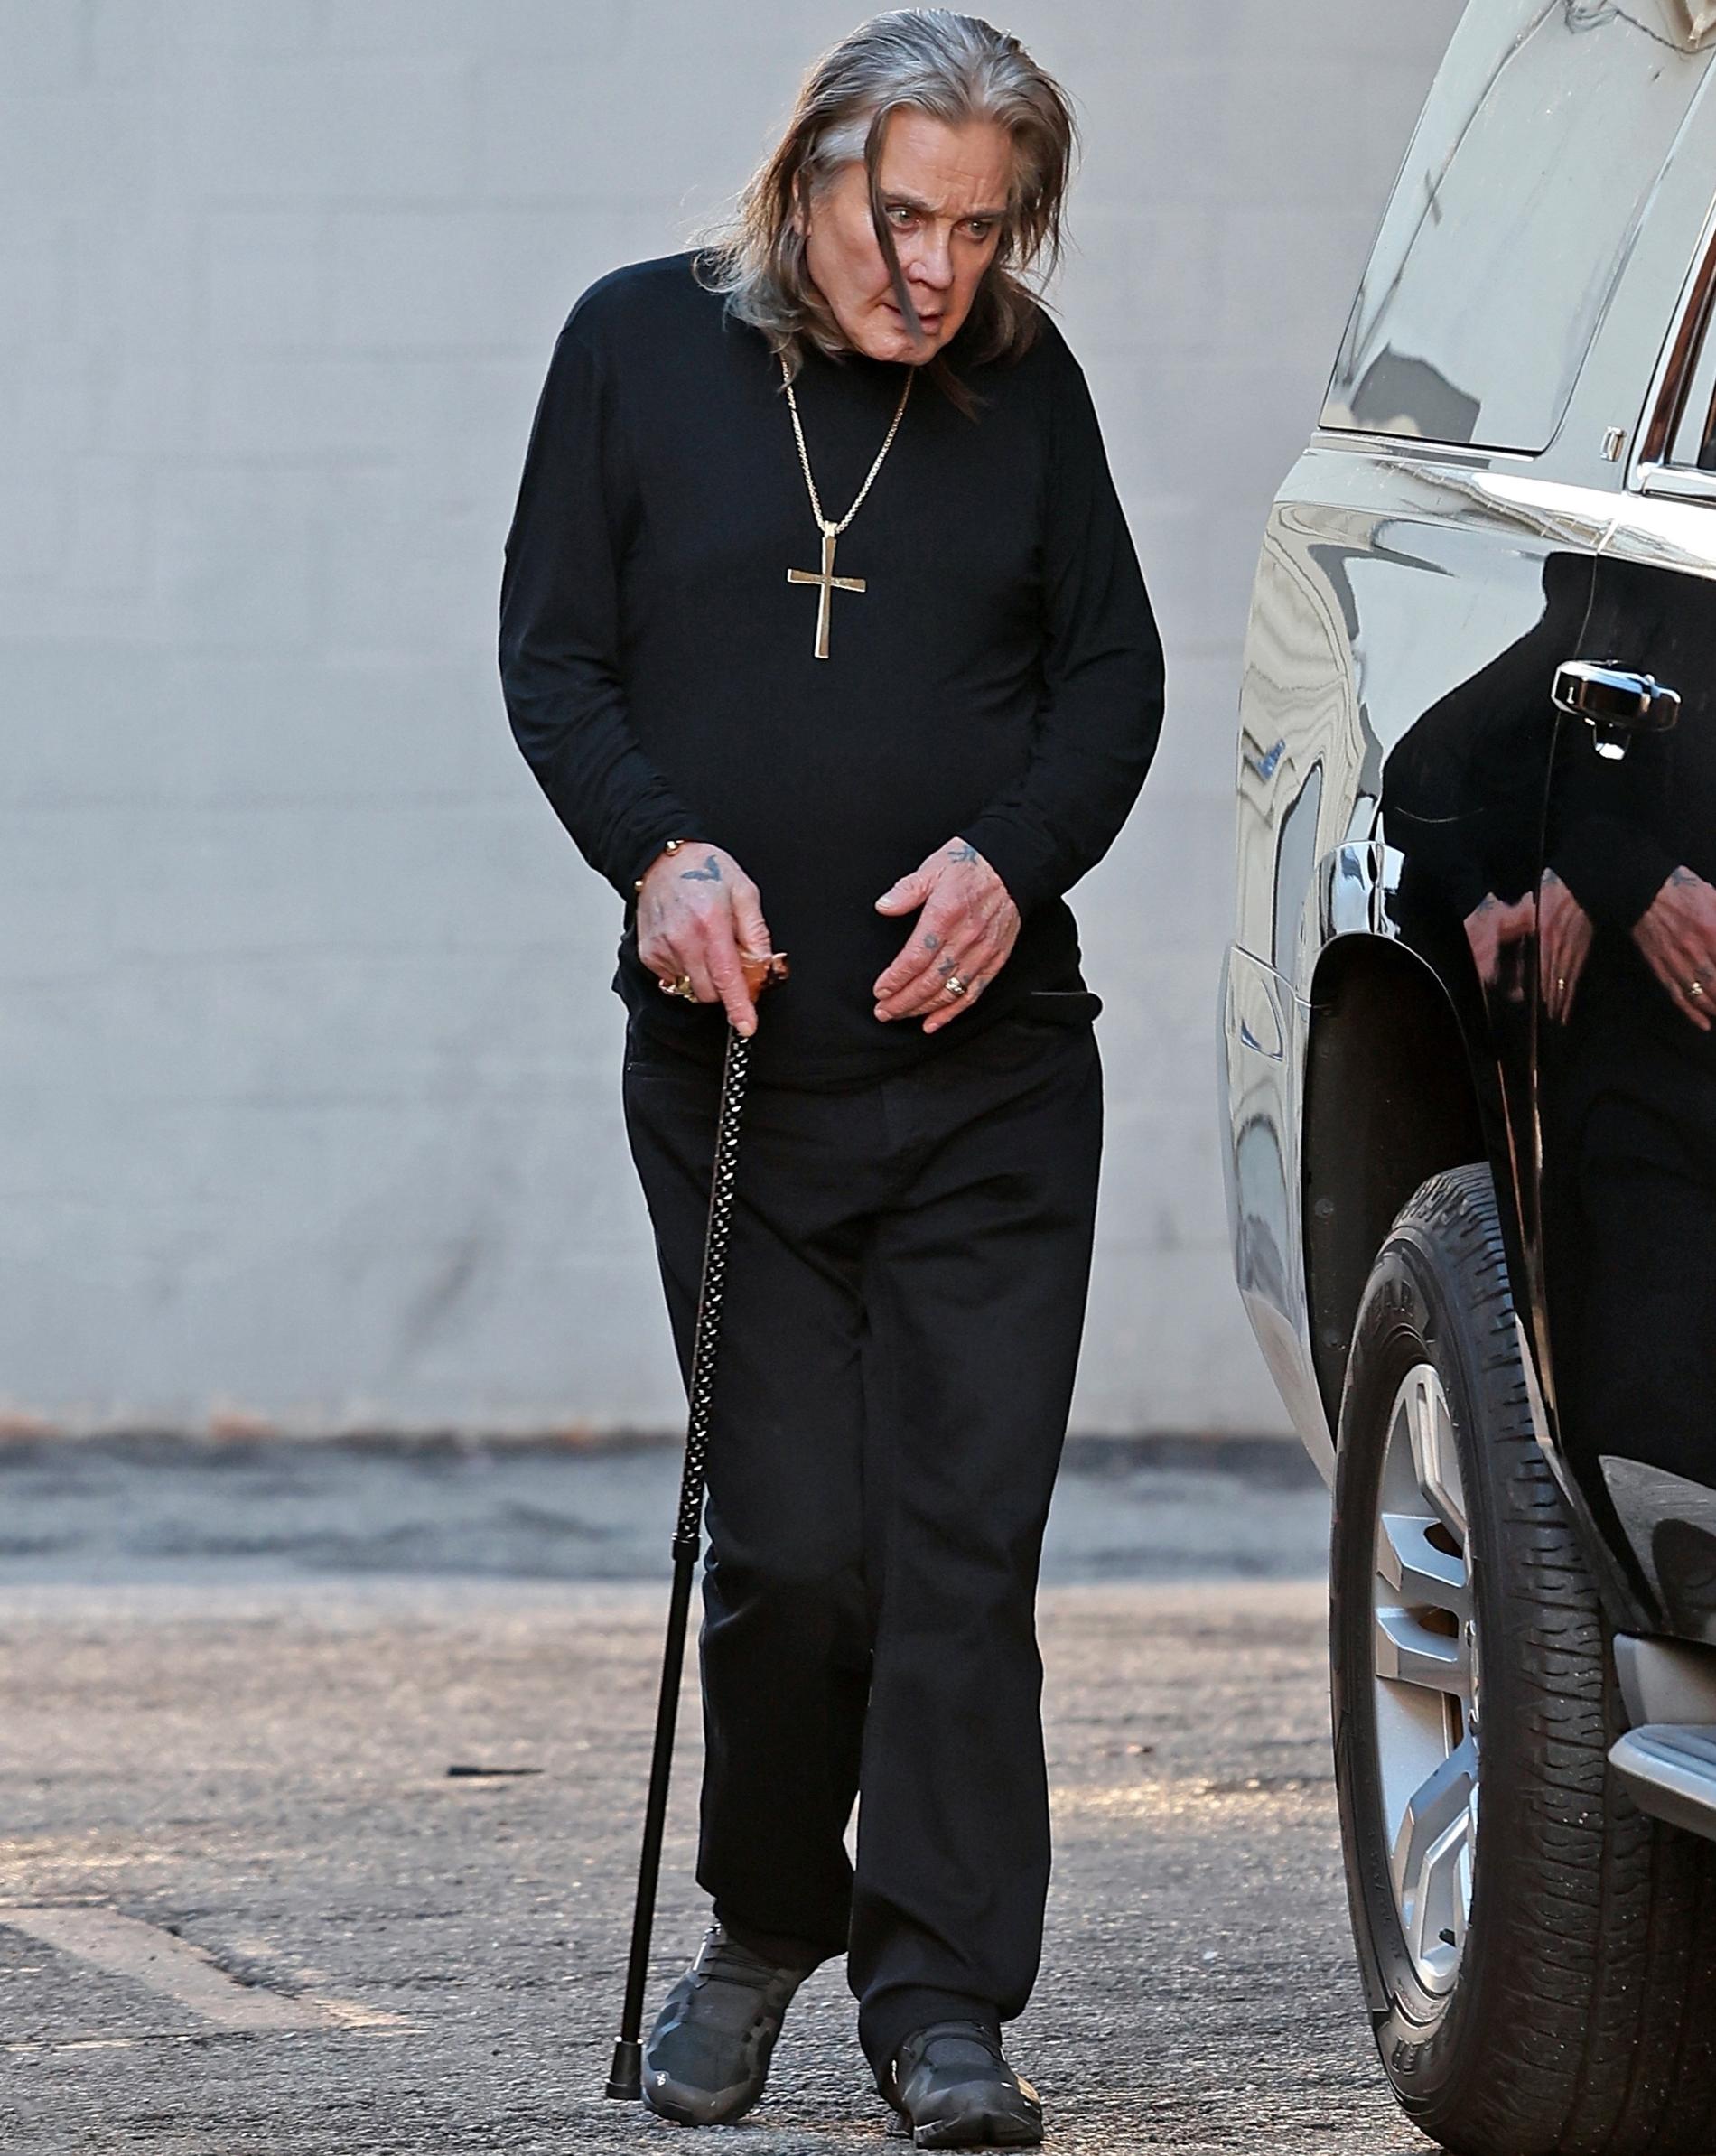 Ozzy Osbourne ute och shoppar med käpp.